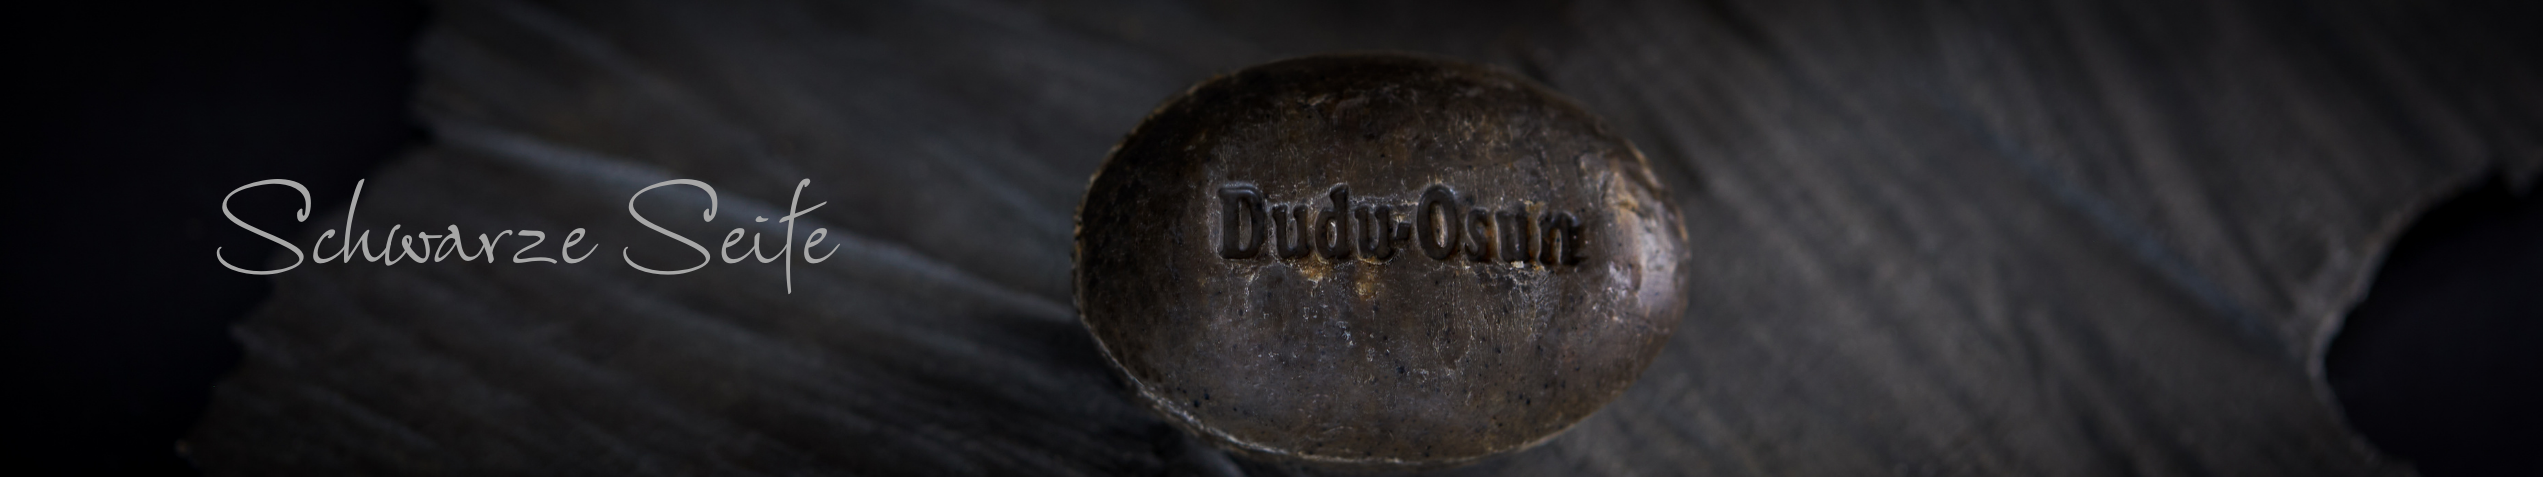 Dudu-Osun® – Schwarze Seife aus Afrika